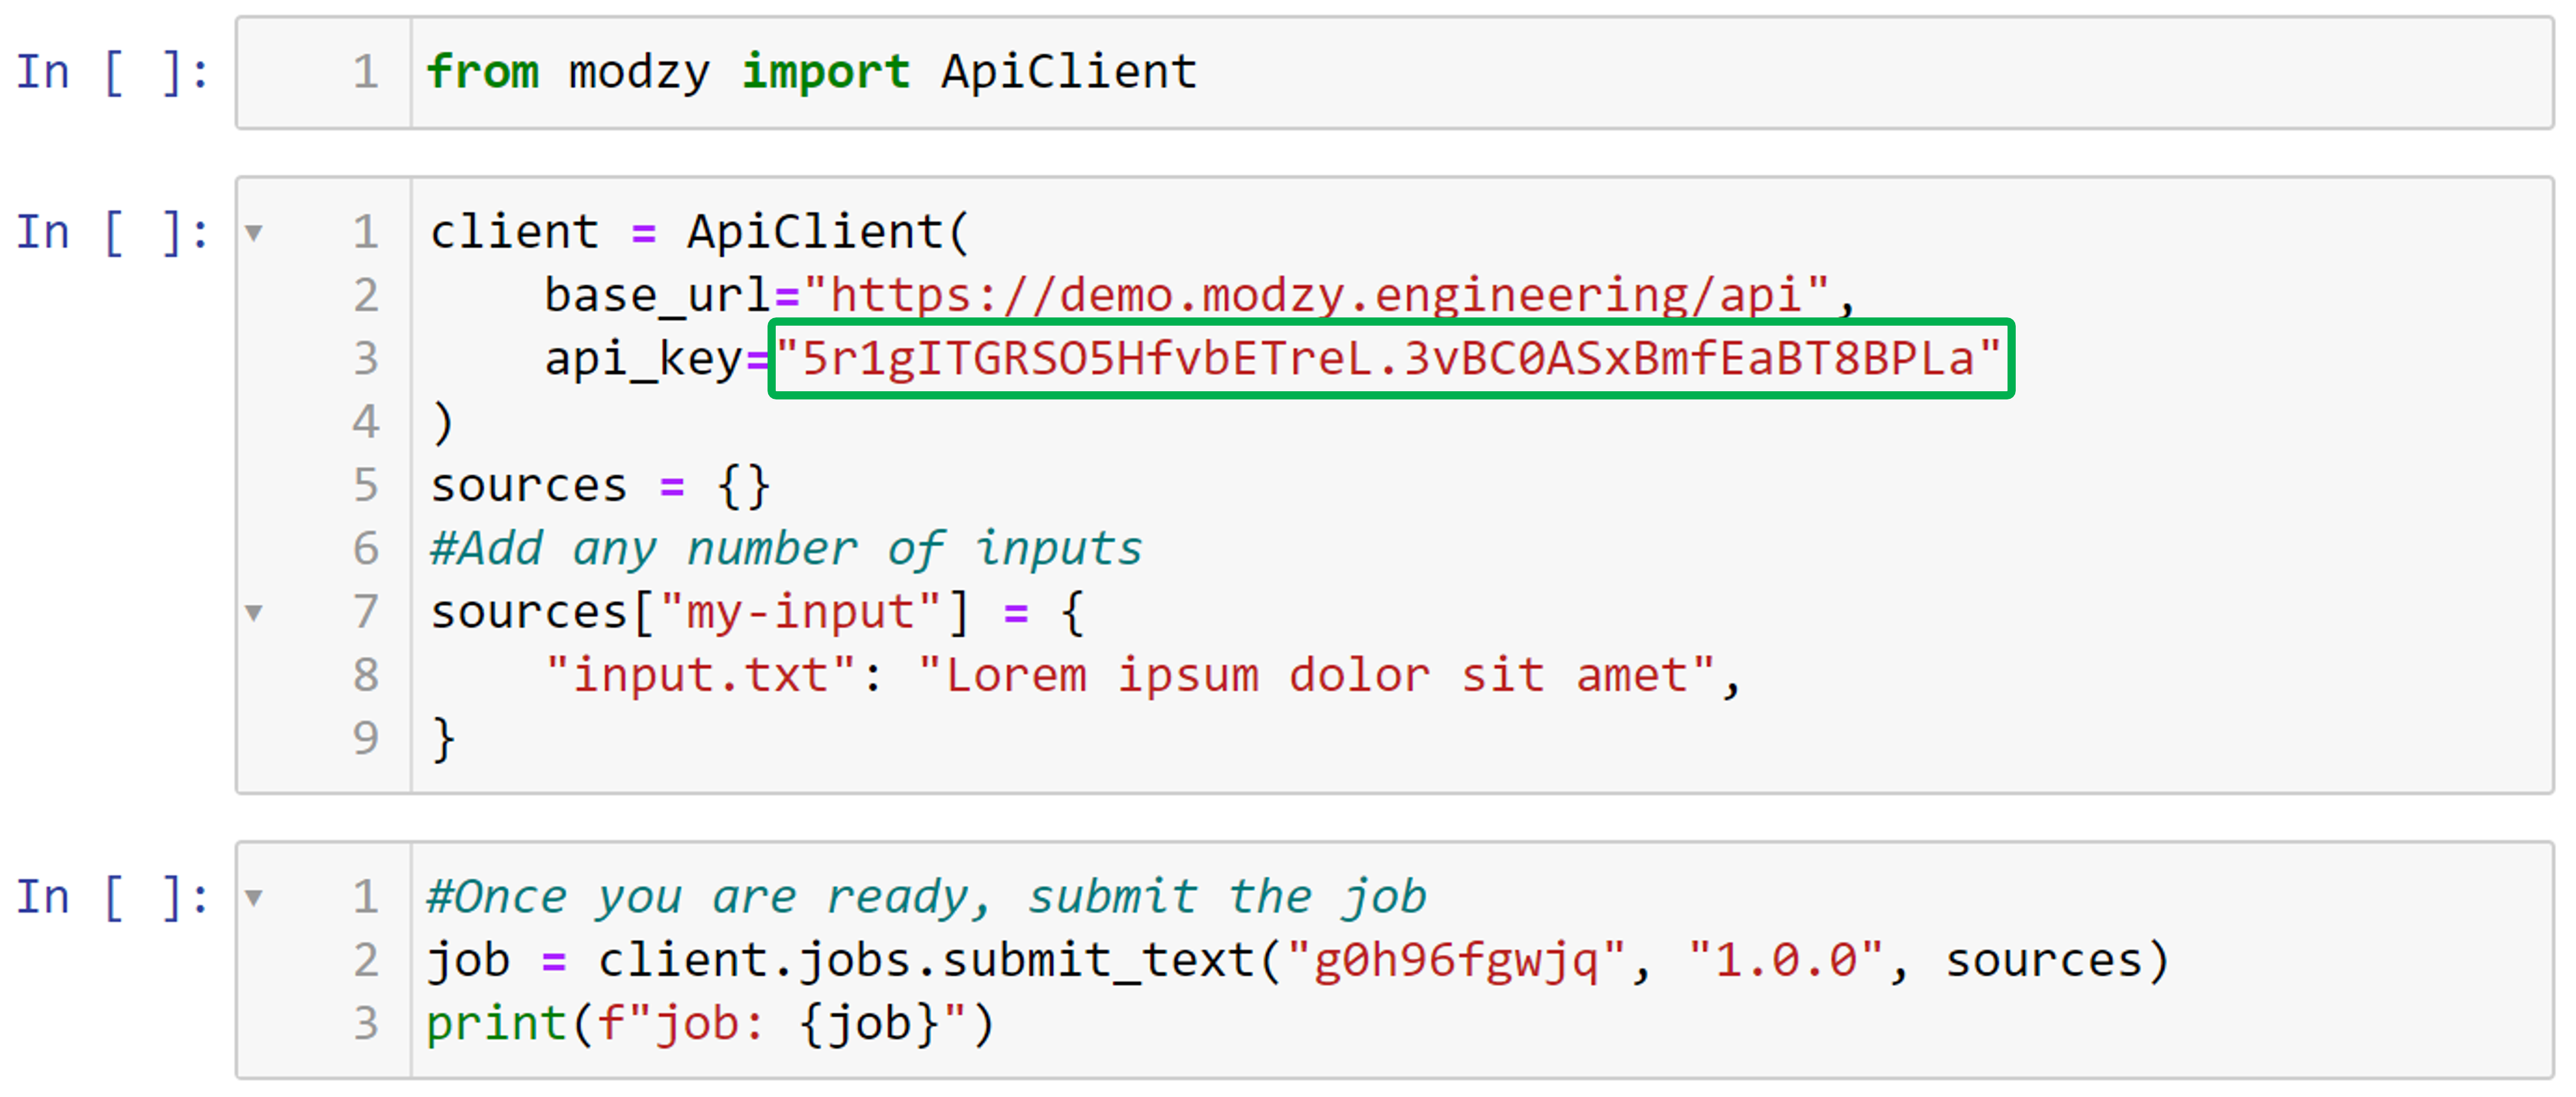 API Key Inserted into Code